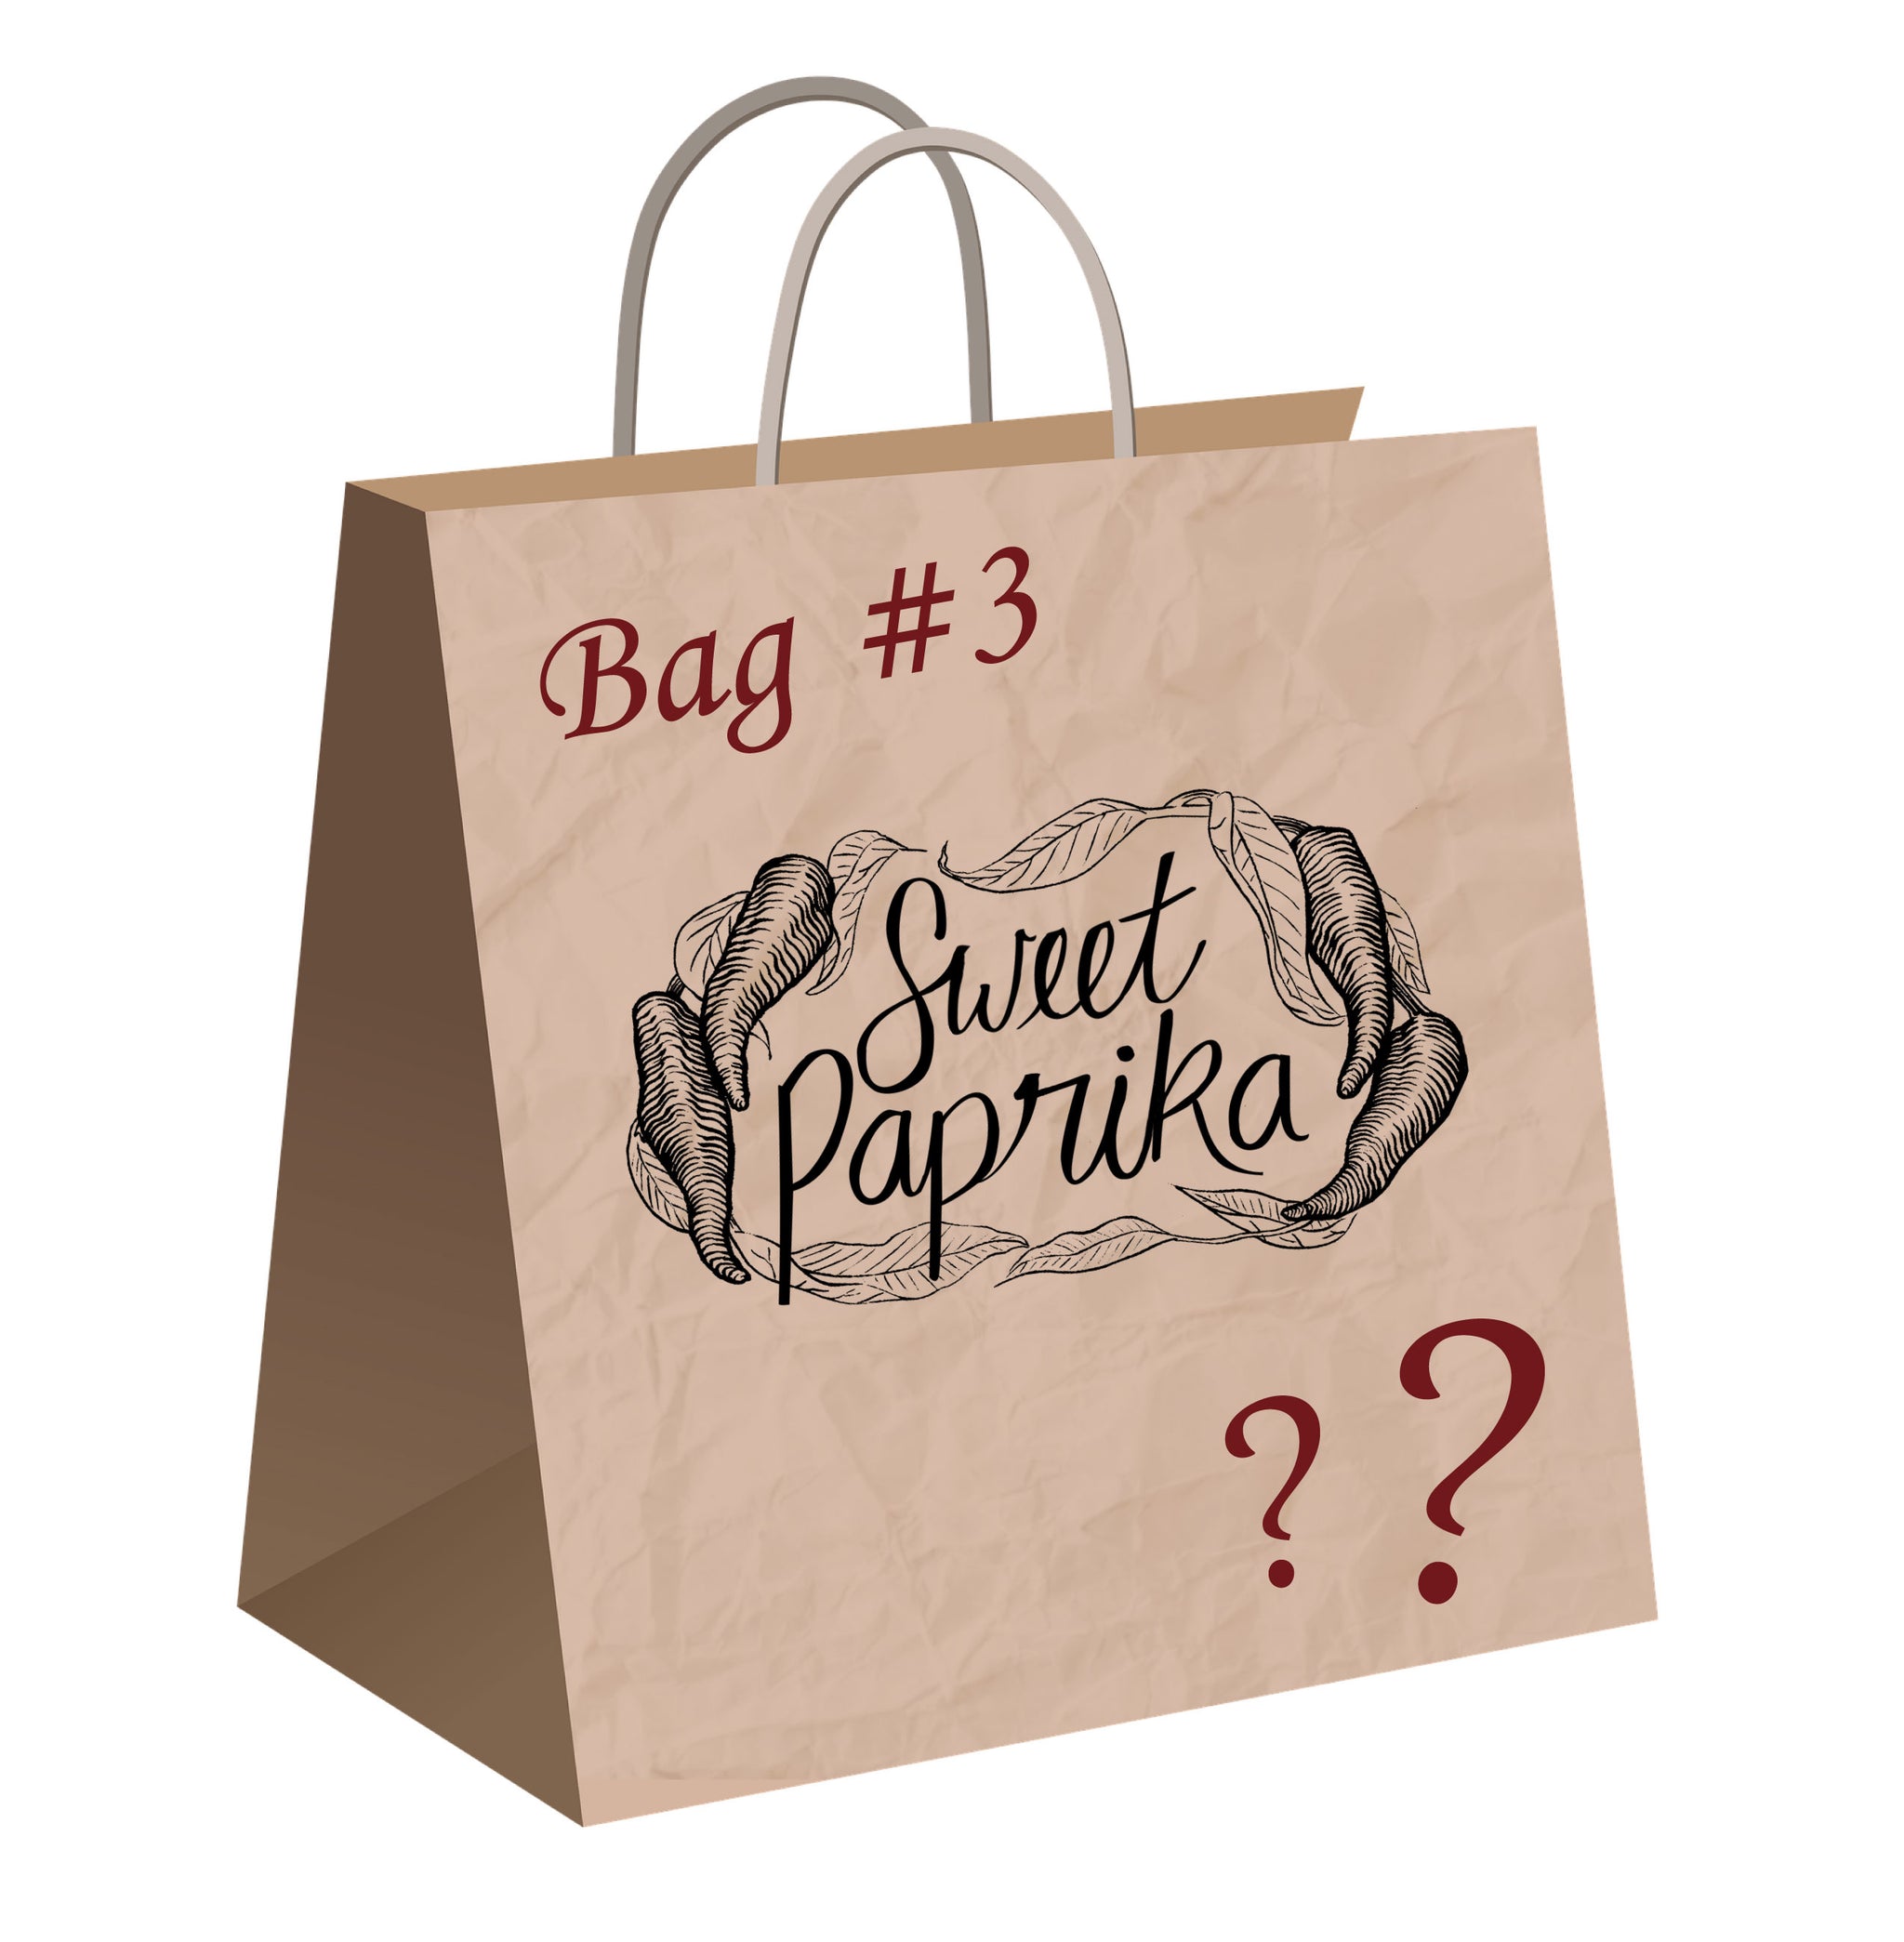 Mystery Bag #3 : Echantillon de Superwash